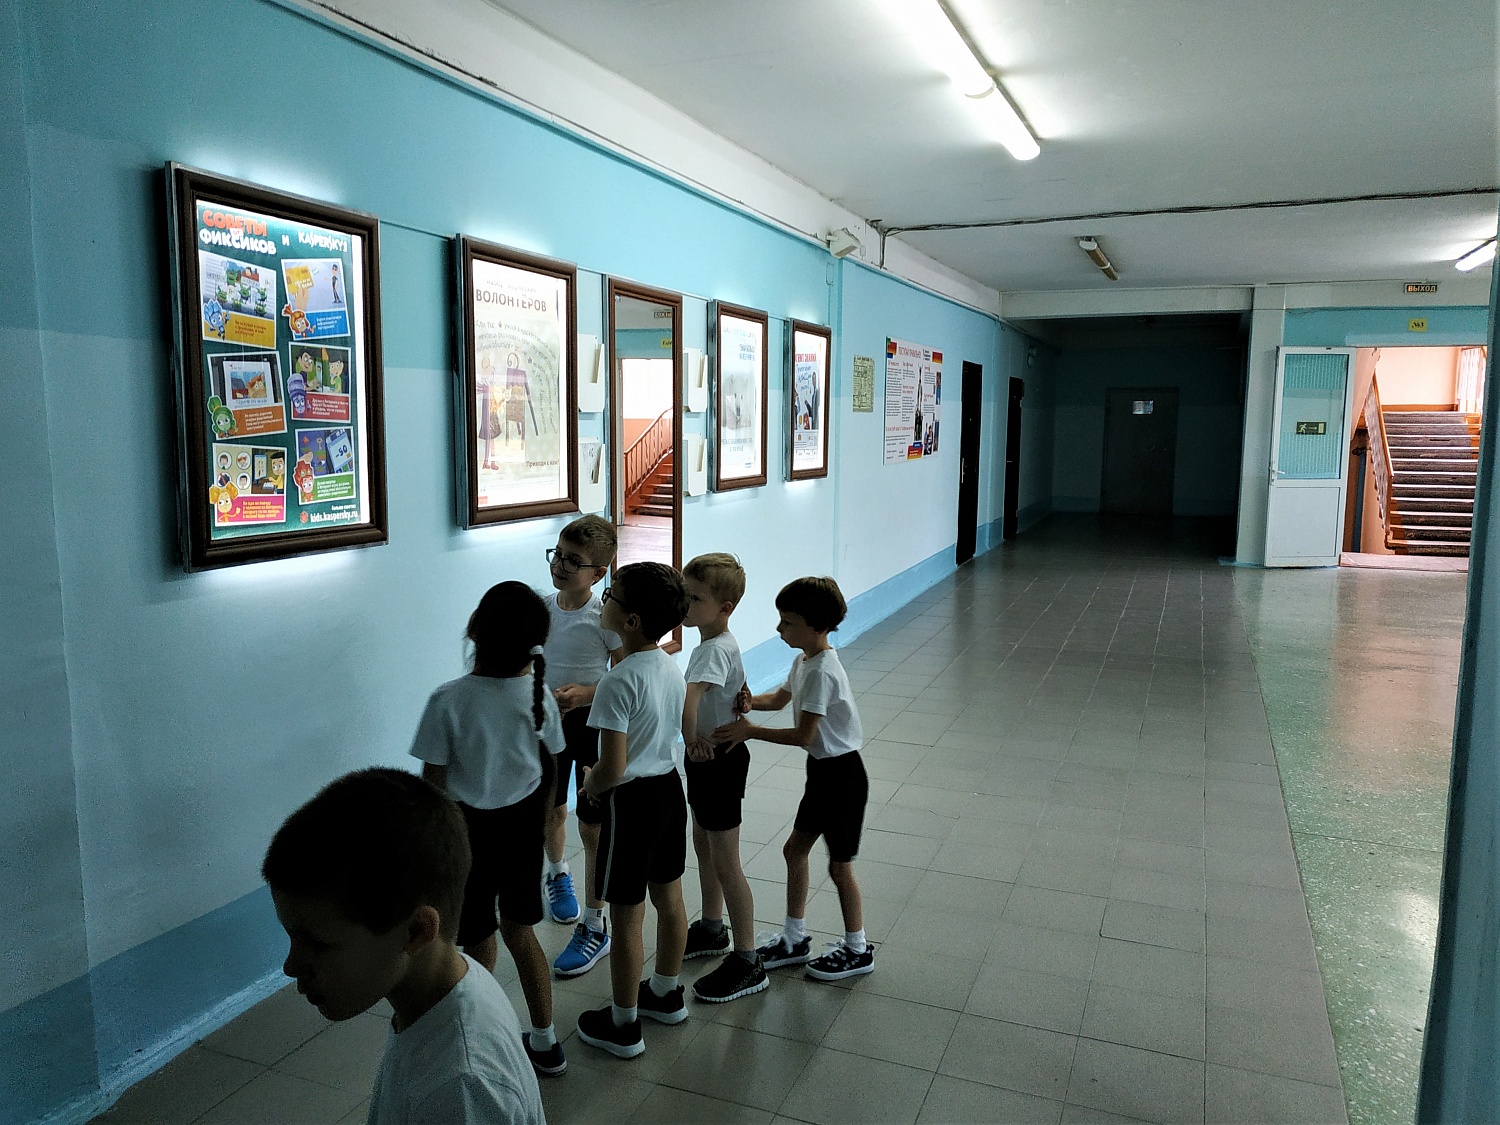 Kaspersky и герои мультсериала "Фиксики" дают советы школьным учащимся!